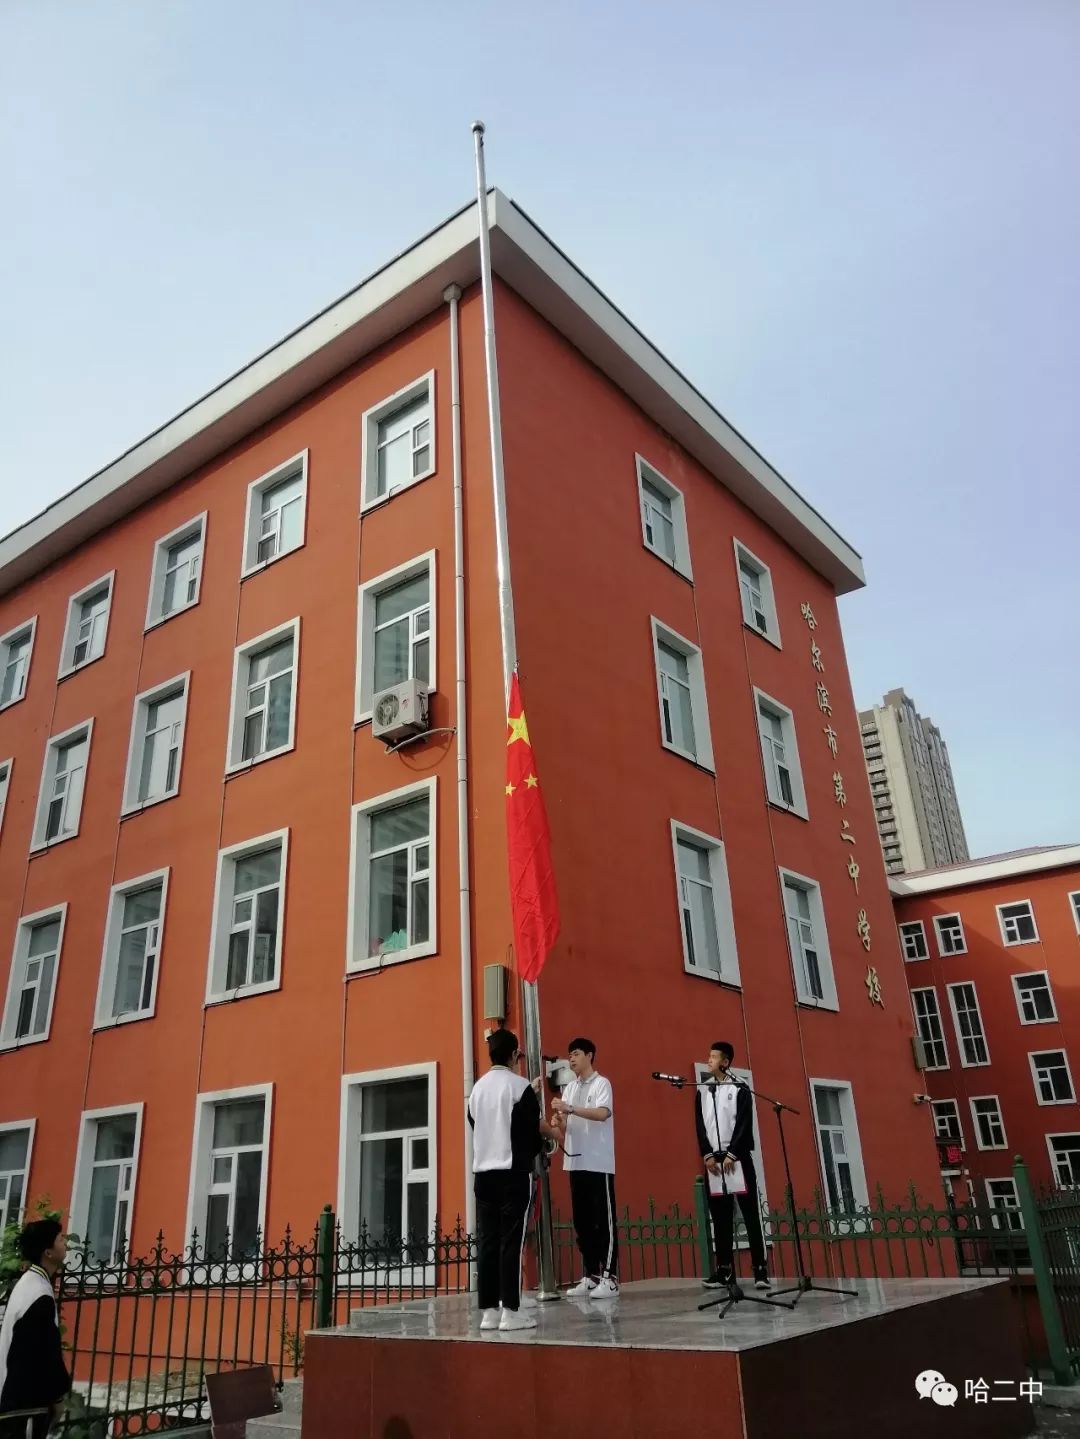 争做文明学生,创建文明校园为主题的2019年8月20日,哈尔滨市第二中学